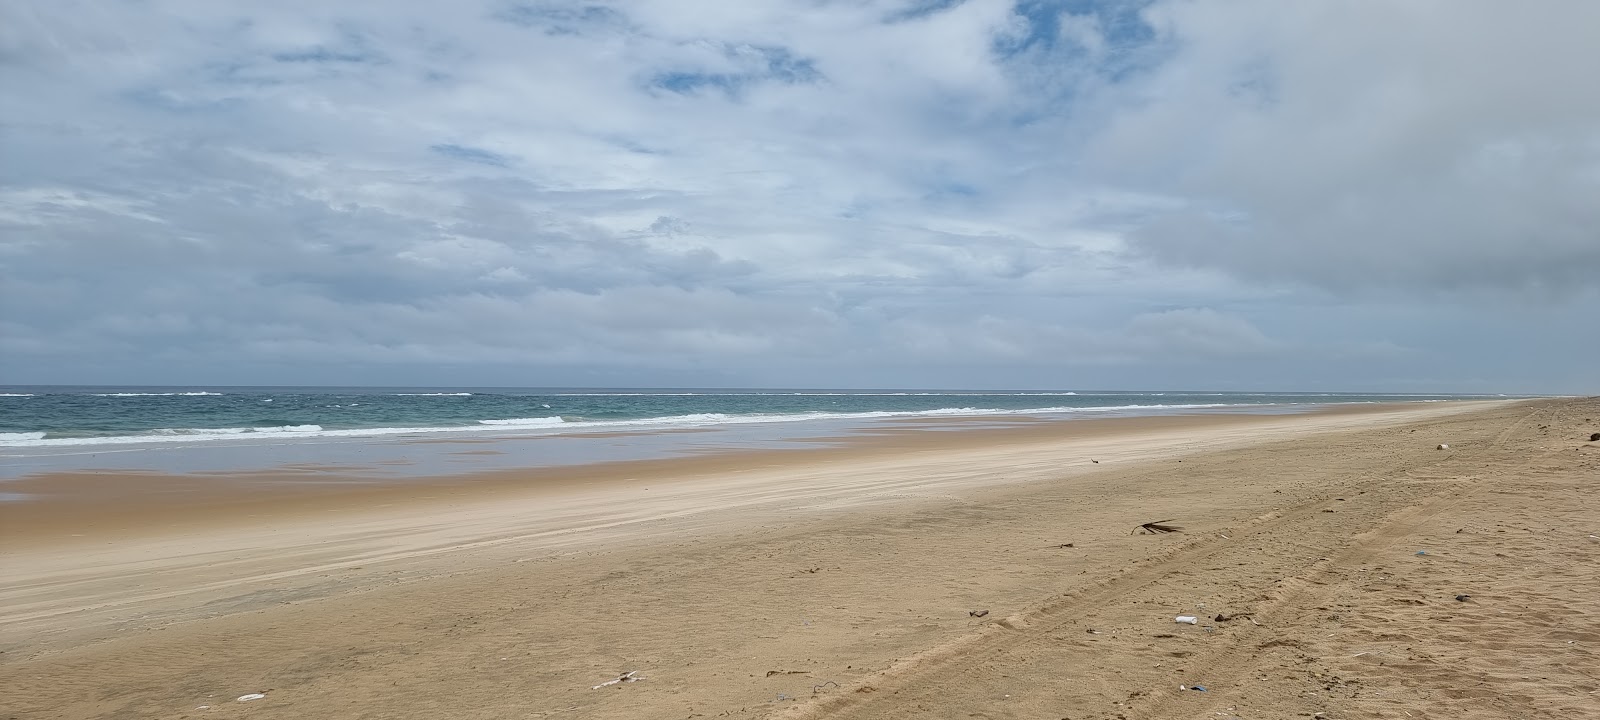 Foto von Island Rock Beach mit langer gerader strand